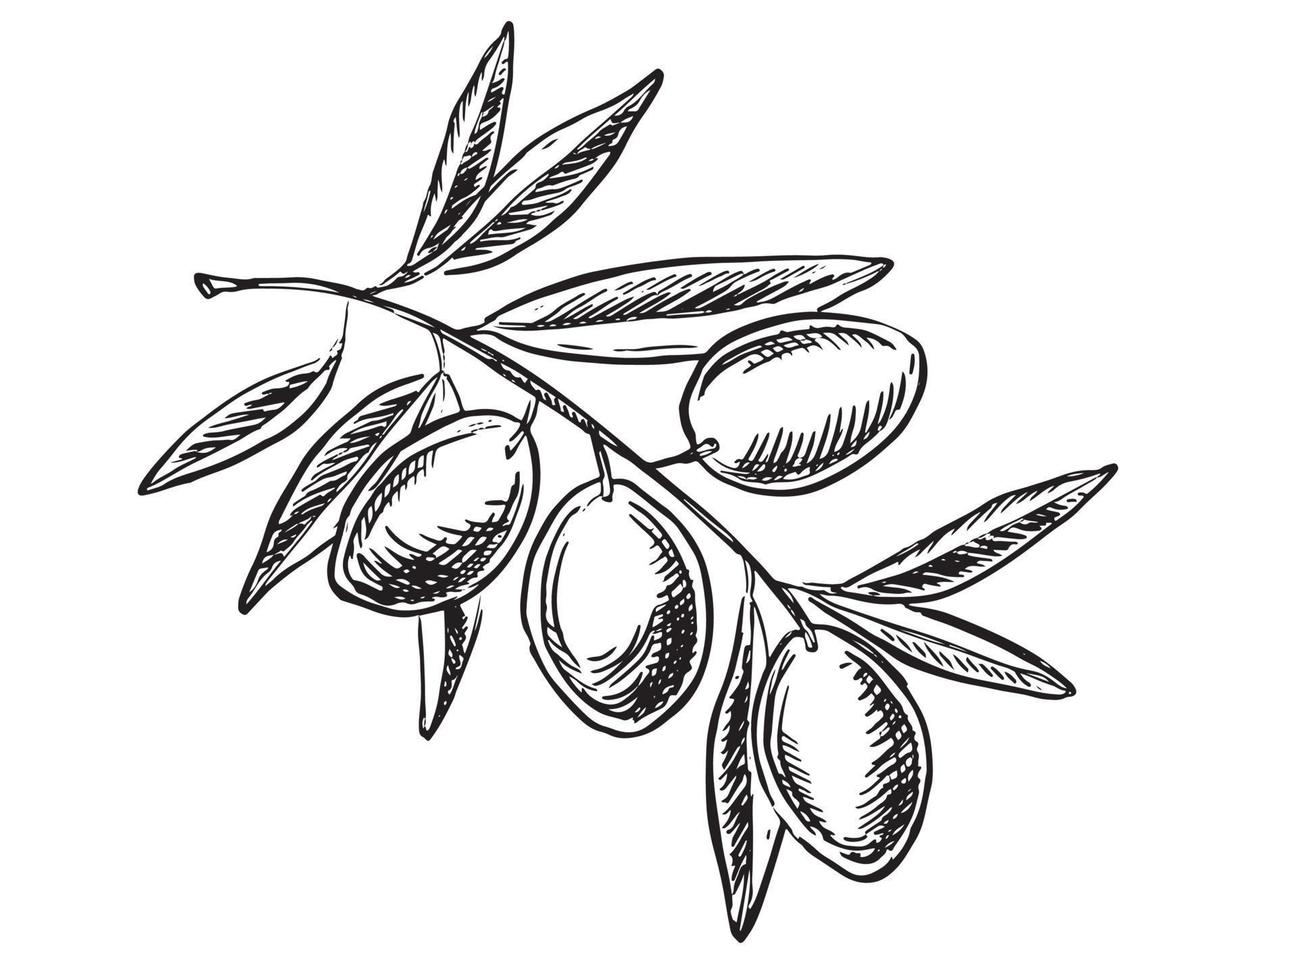 Oliven auf einem Ast, handgezeichnet, Vektorgrafiken. vektor